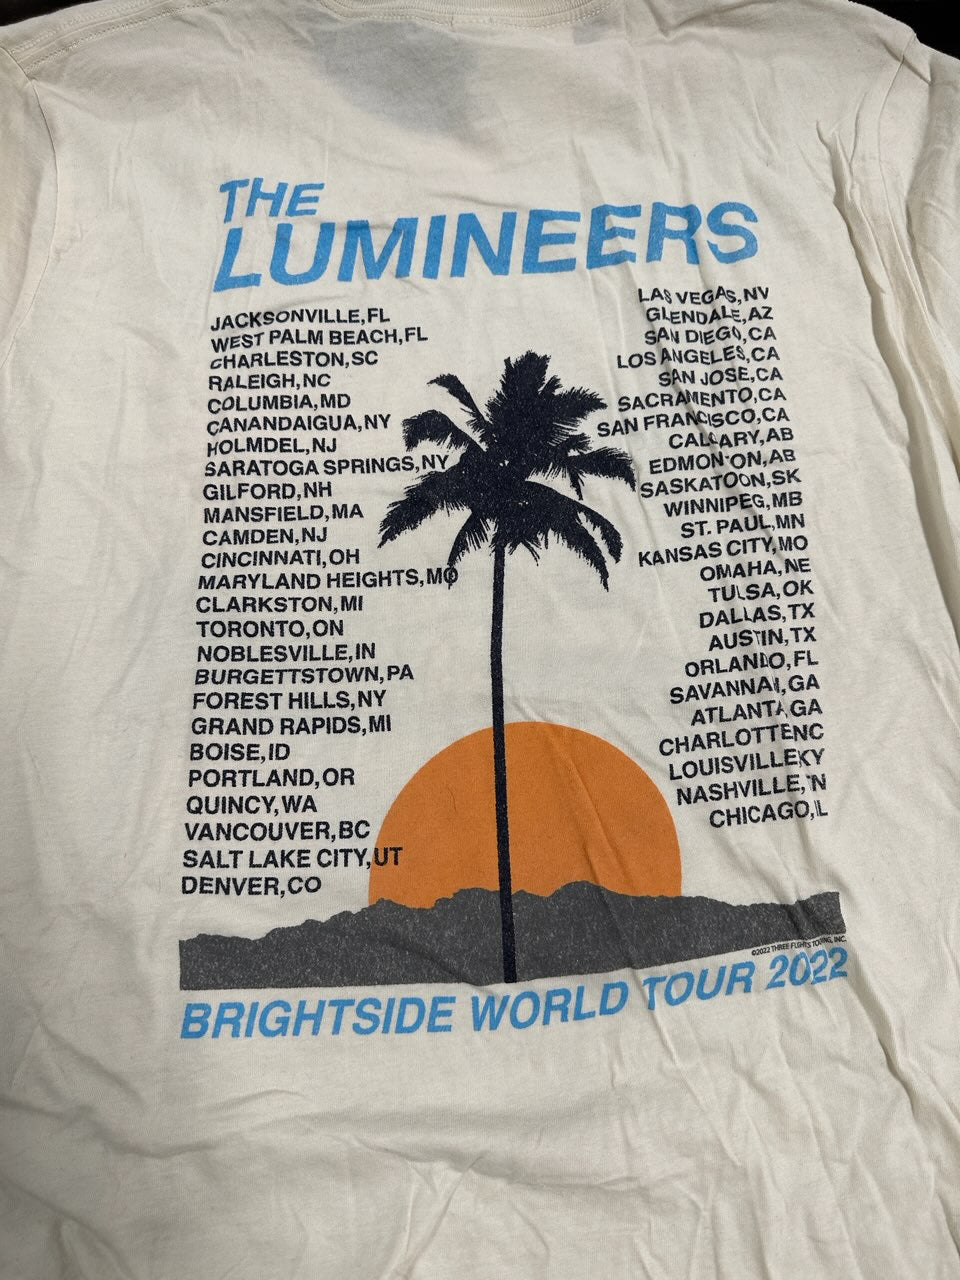 The Lumineers 2022 Brightside World Tour T-Shirt, White, XL